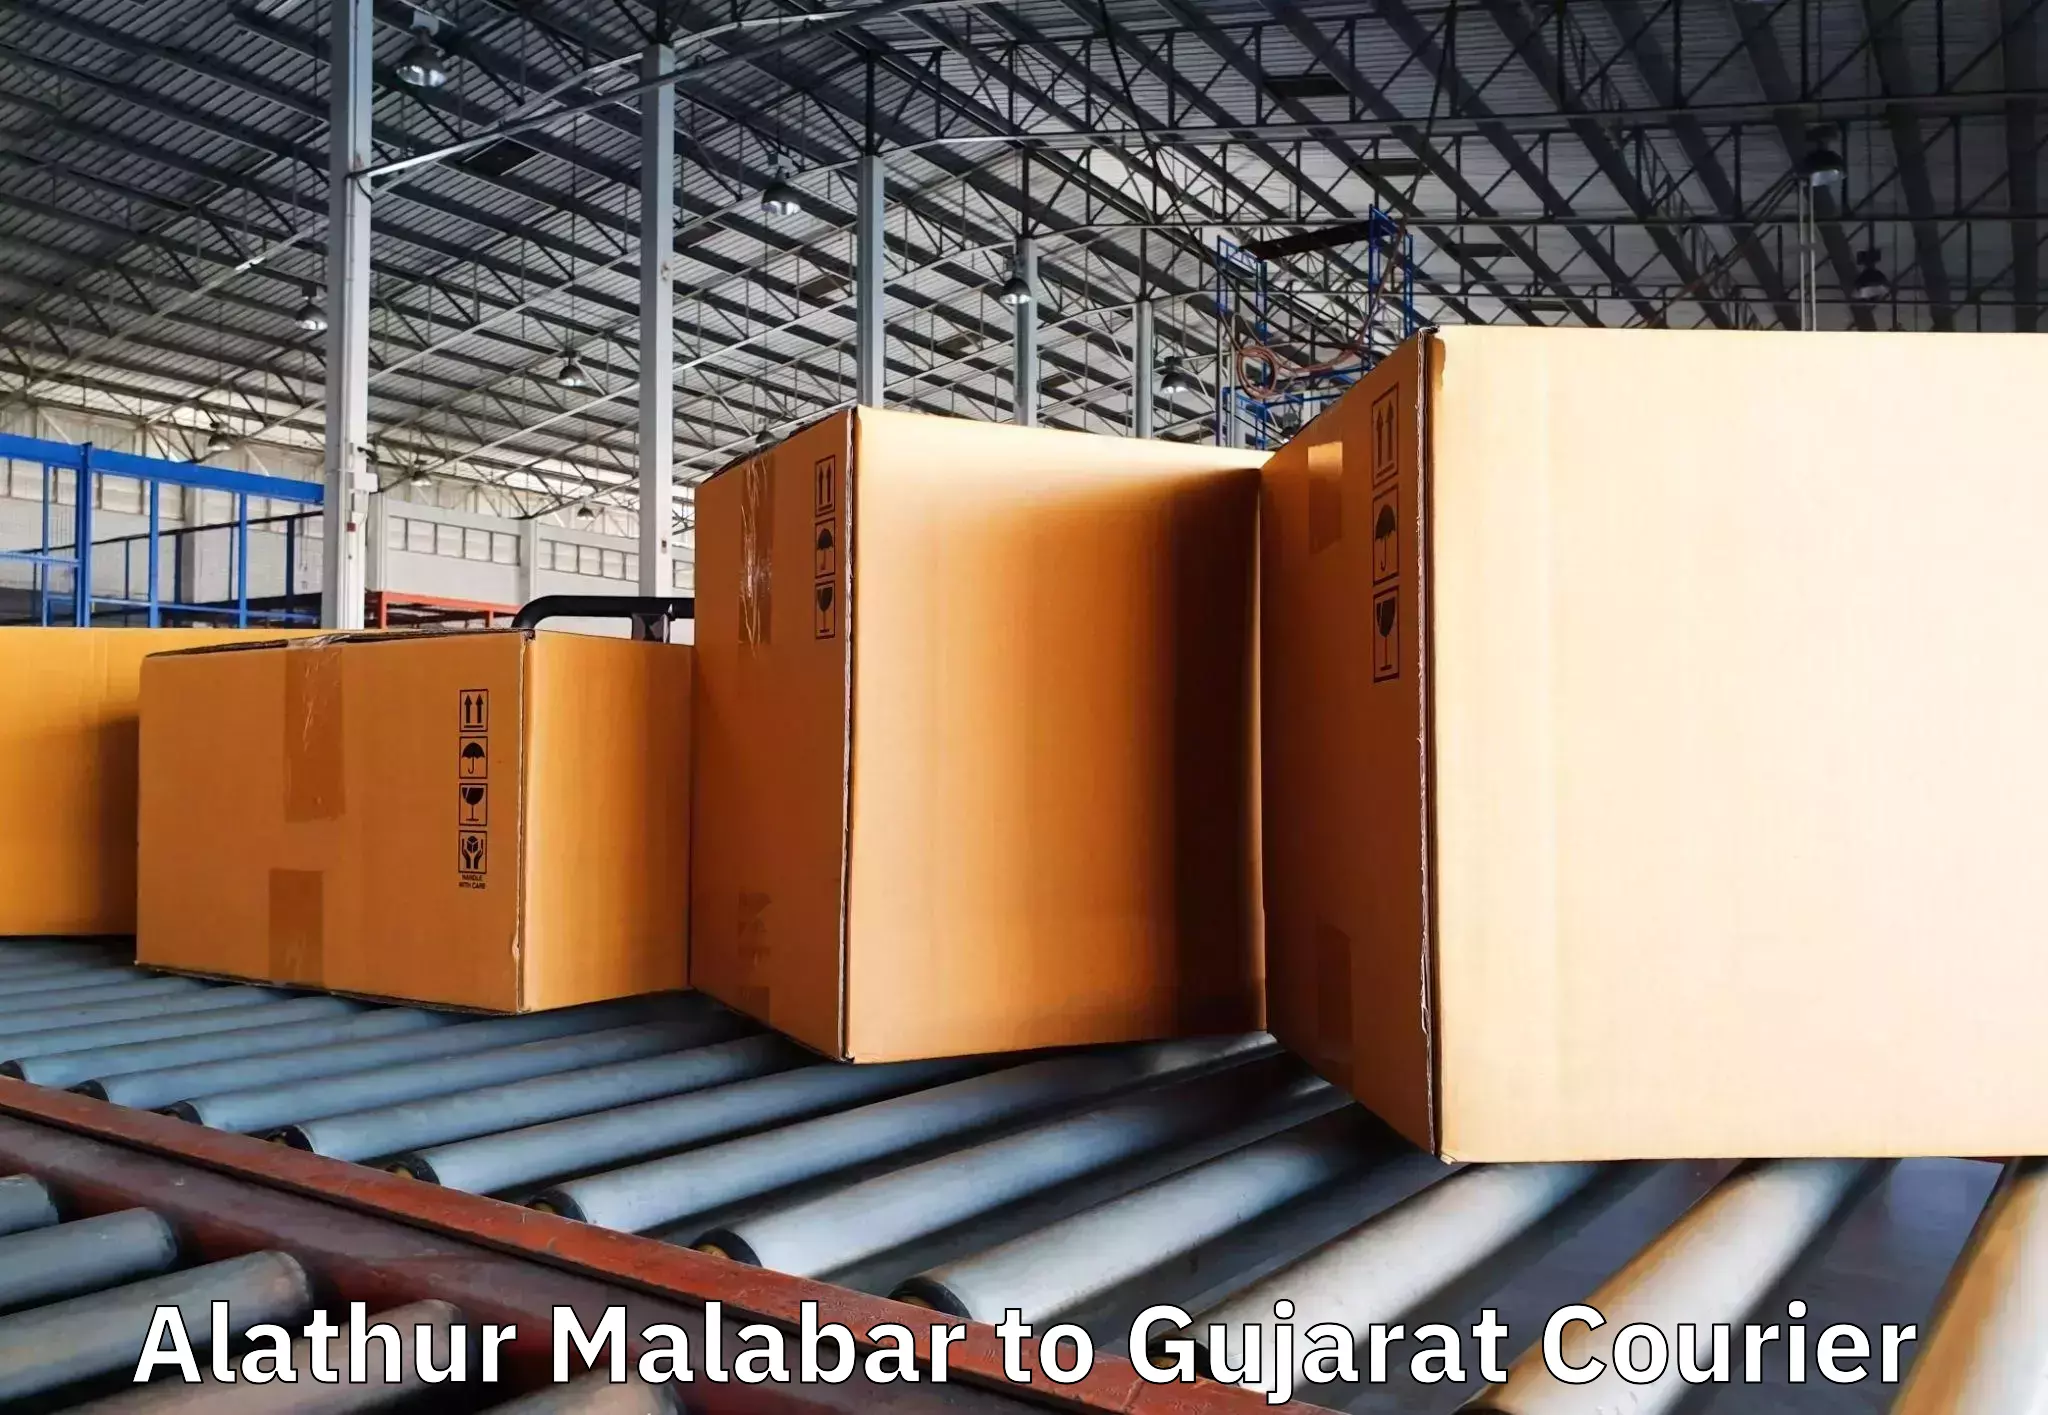 Professional packing and transport Alathur Malabar to Kodinar